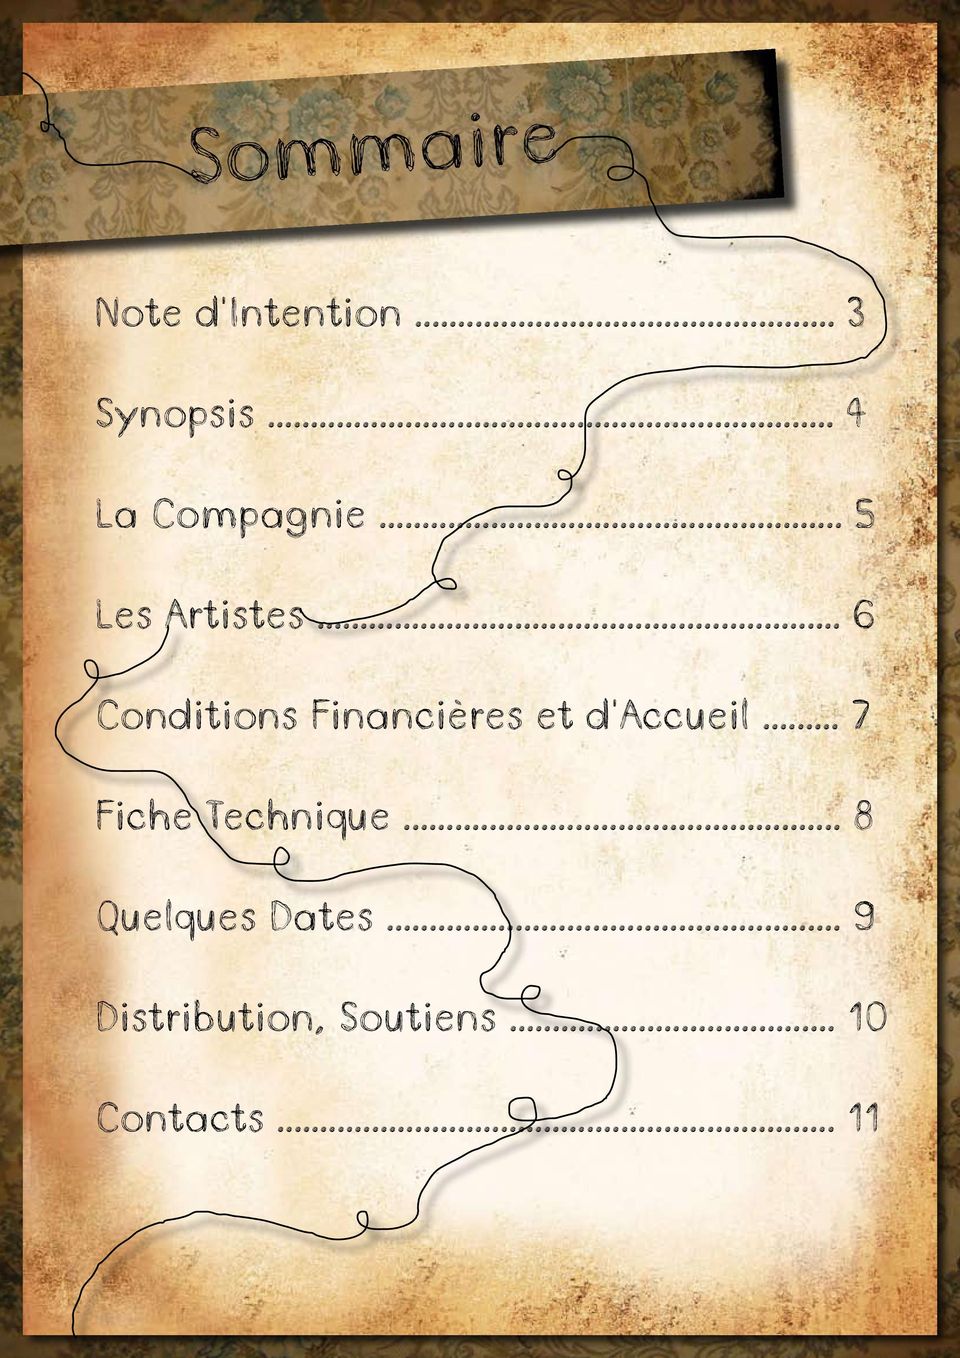 .. 6 Conditions Financières et d Accueil.